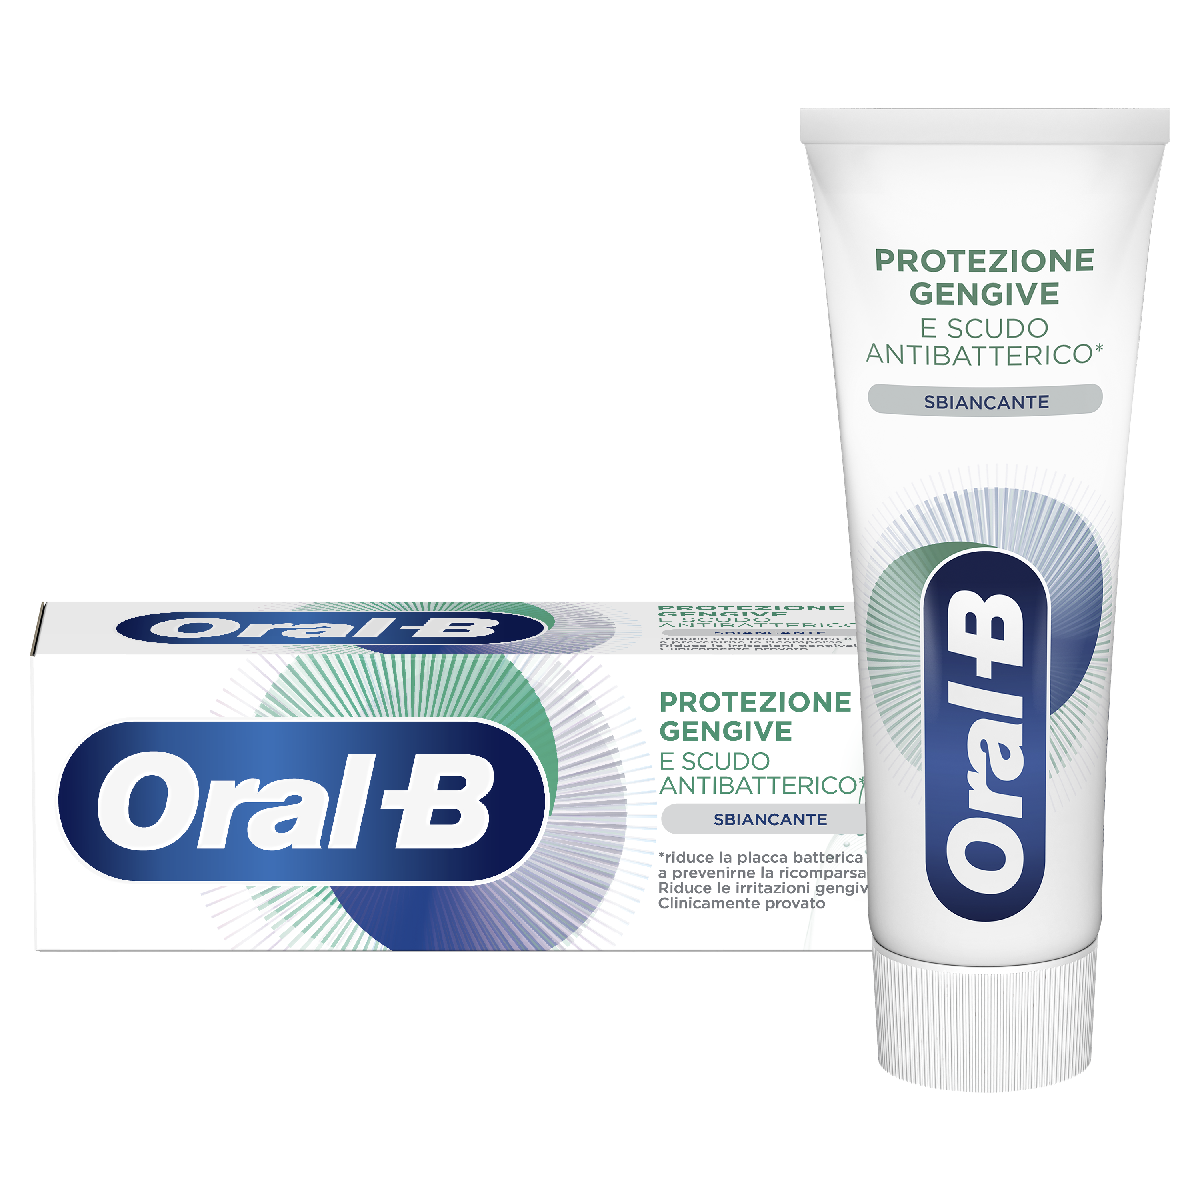 Oral-B Protezione Gengive E Scudo Antibatterico Sbiancante Dentifricio